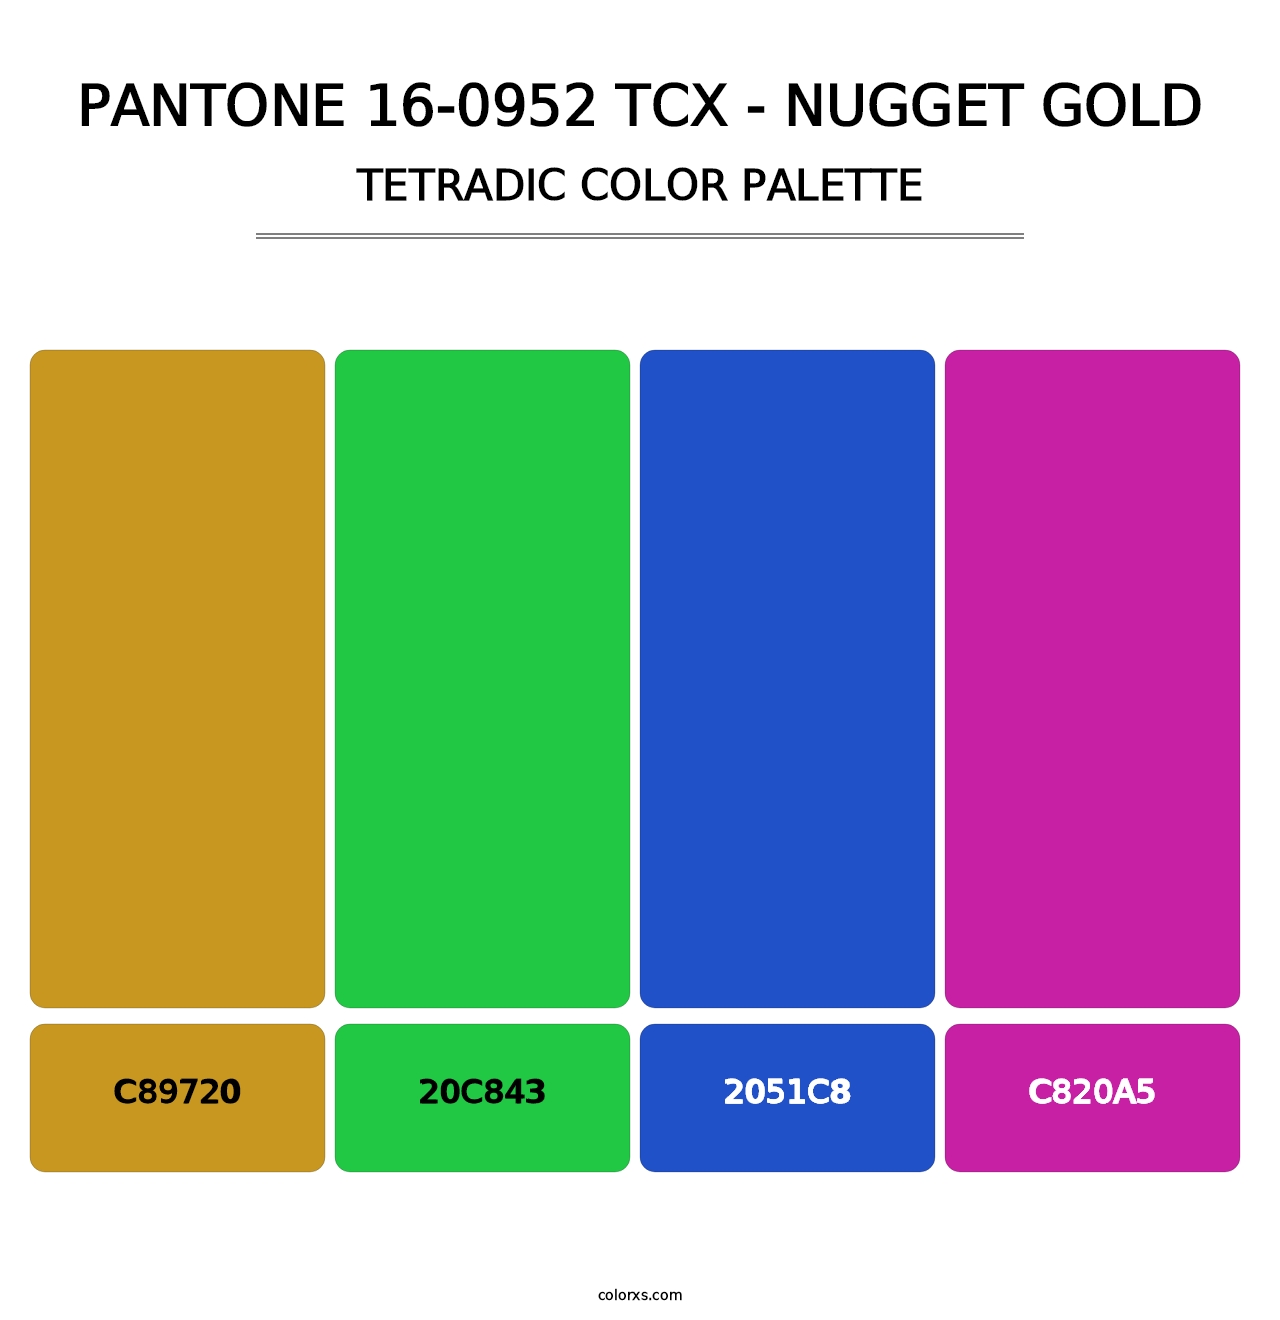 PANTONE 16-0952 TCX - Nugget Gold - Tetradic Color Palette